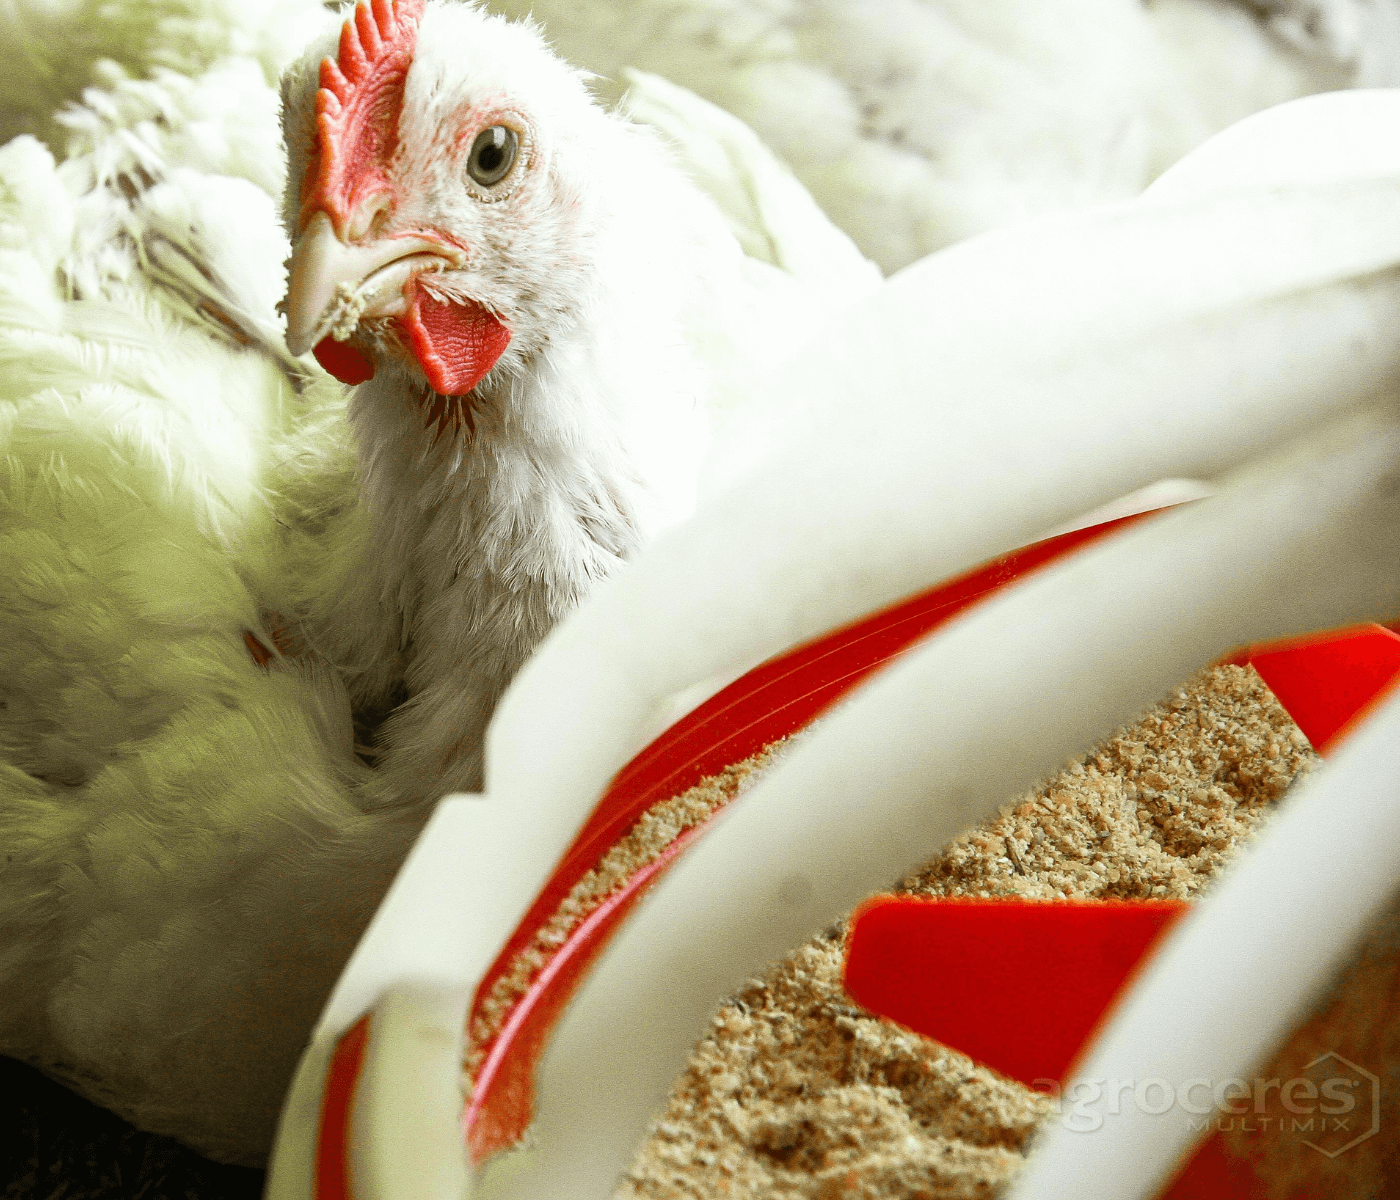 Substituição a antibióticos na produção avícola exige eficácia na combinação...